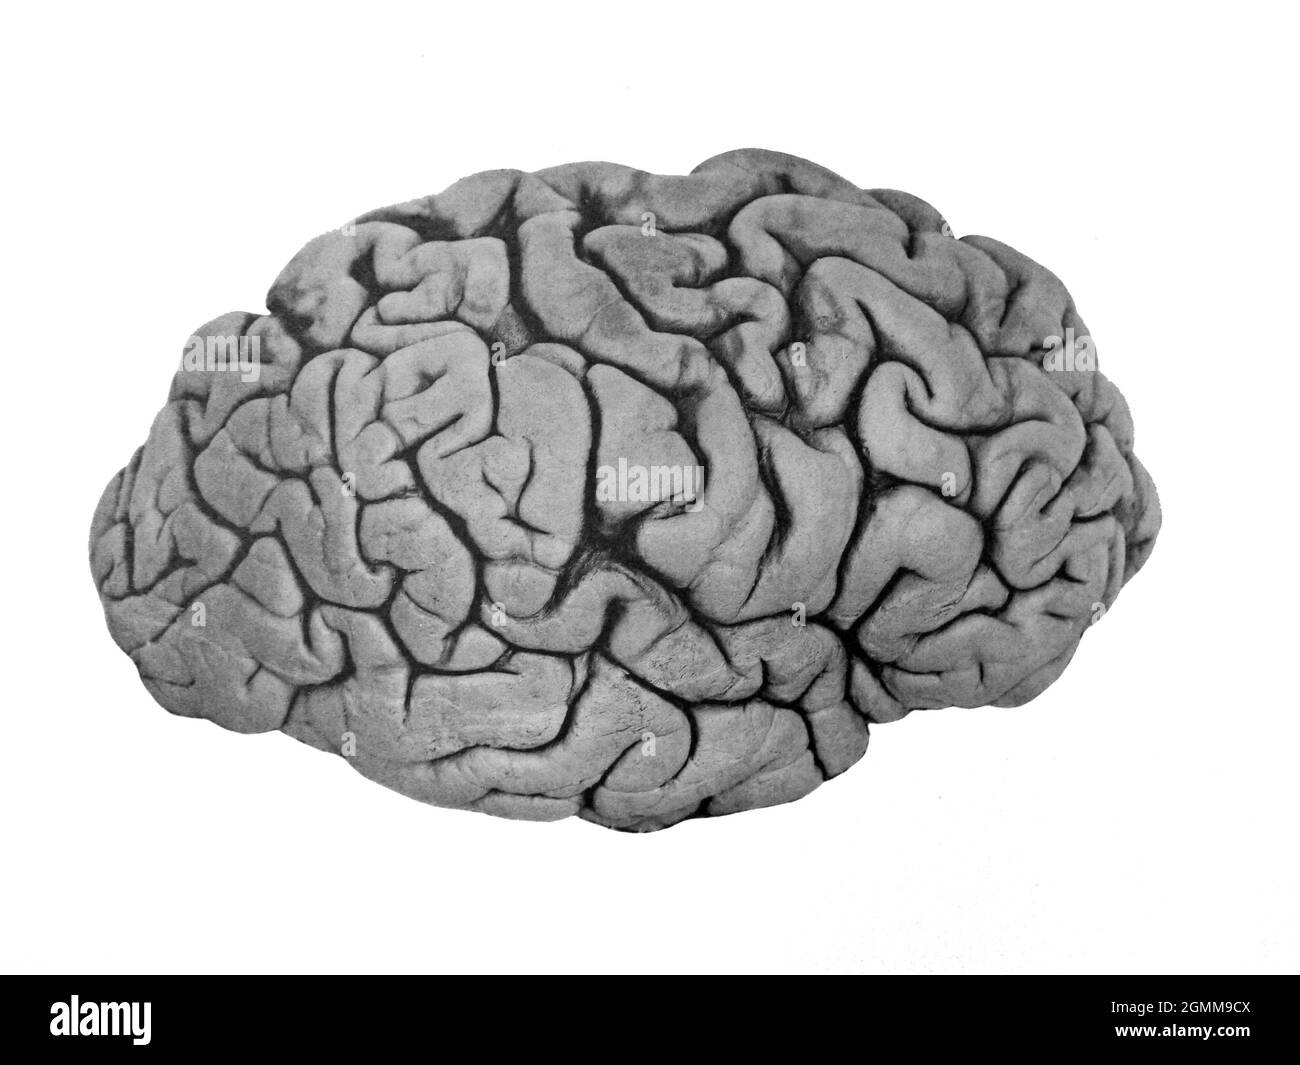 Illustration du cerveau humain d'un manuel médical vers 1900 Banque D'Images